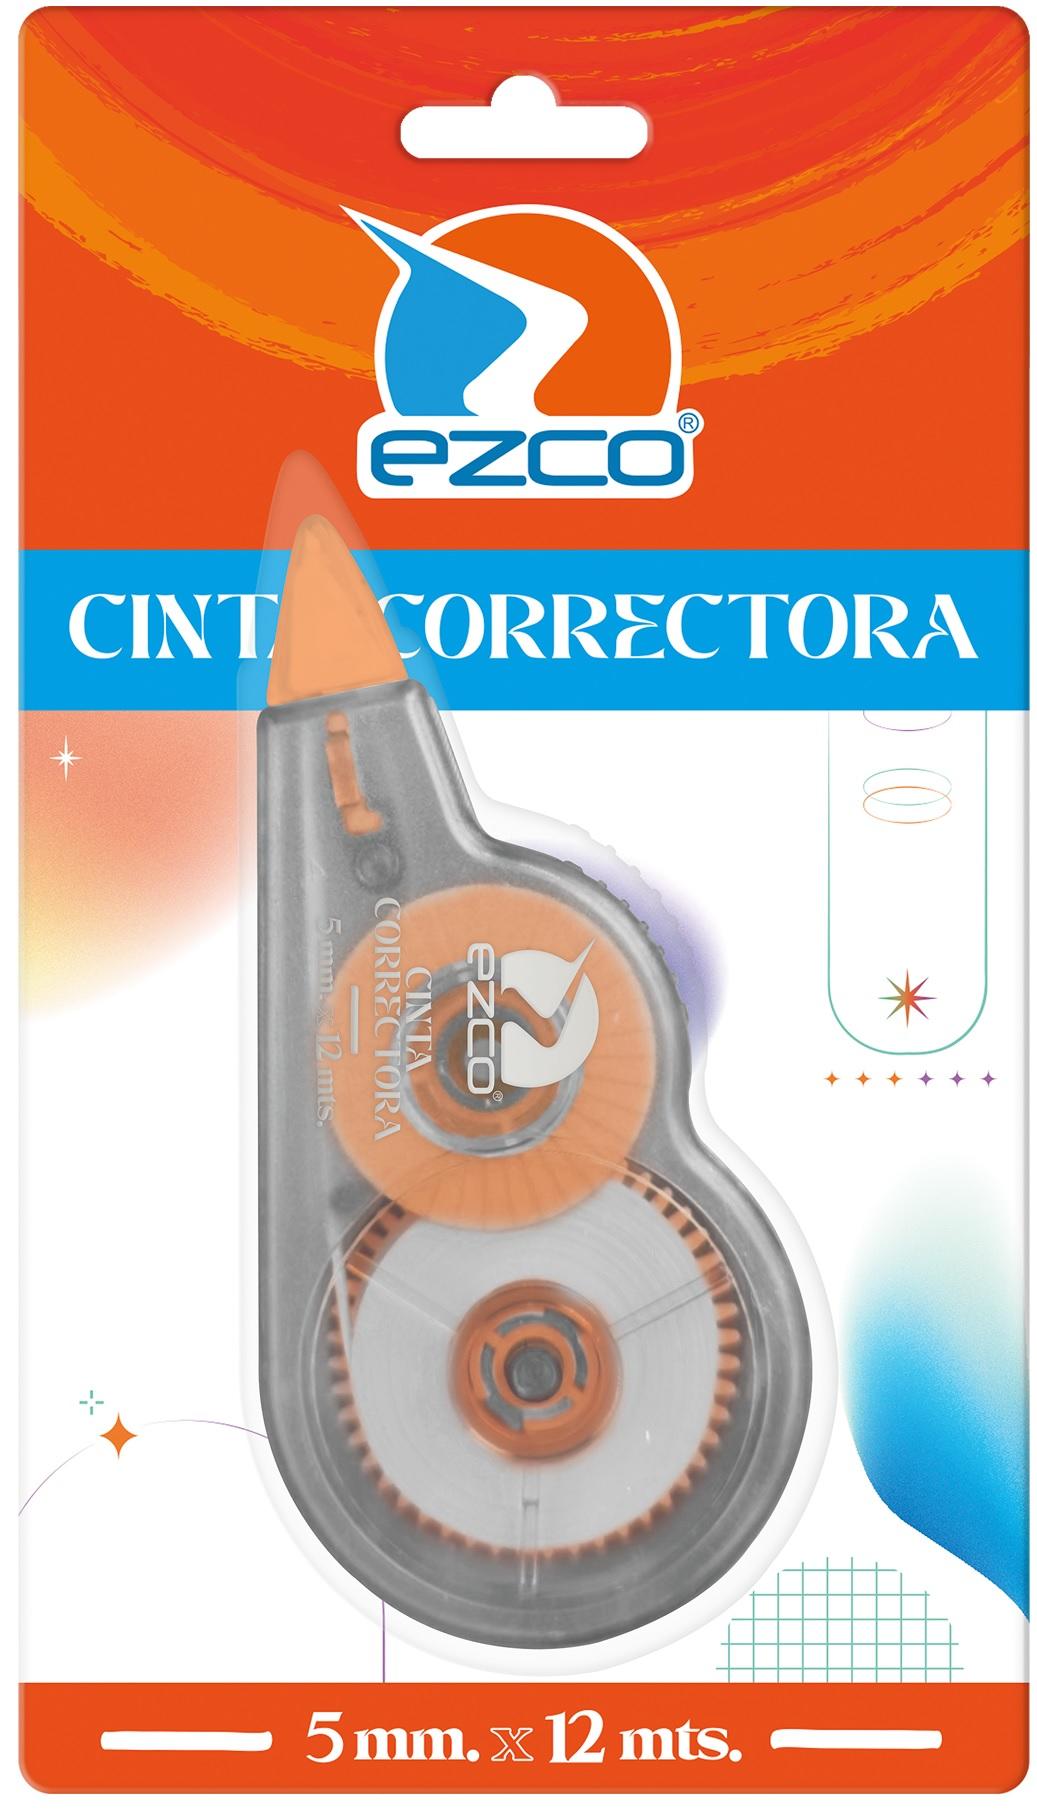 CINTA CORRECTORA EZCO 5MMX12MTS 12U C/U (306112)